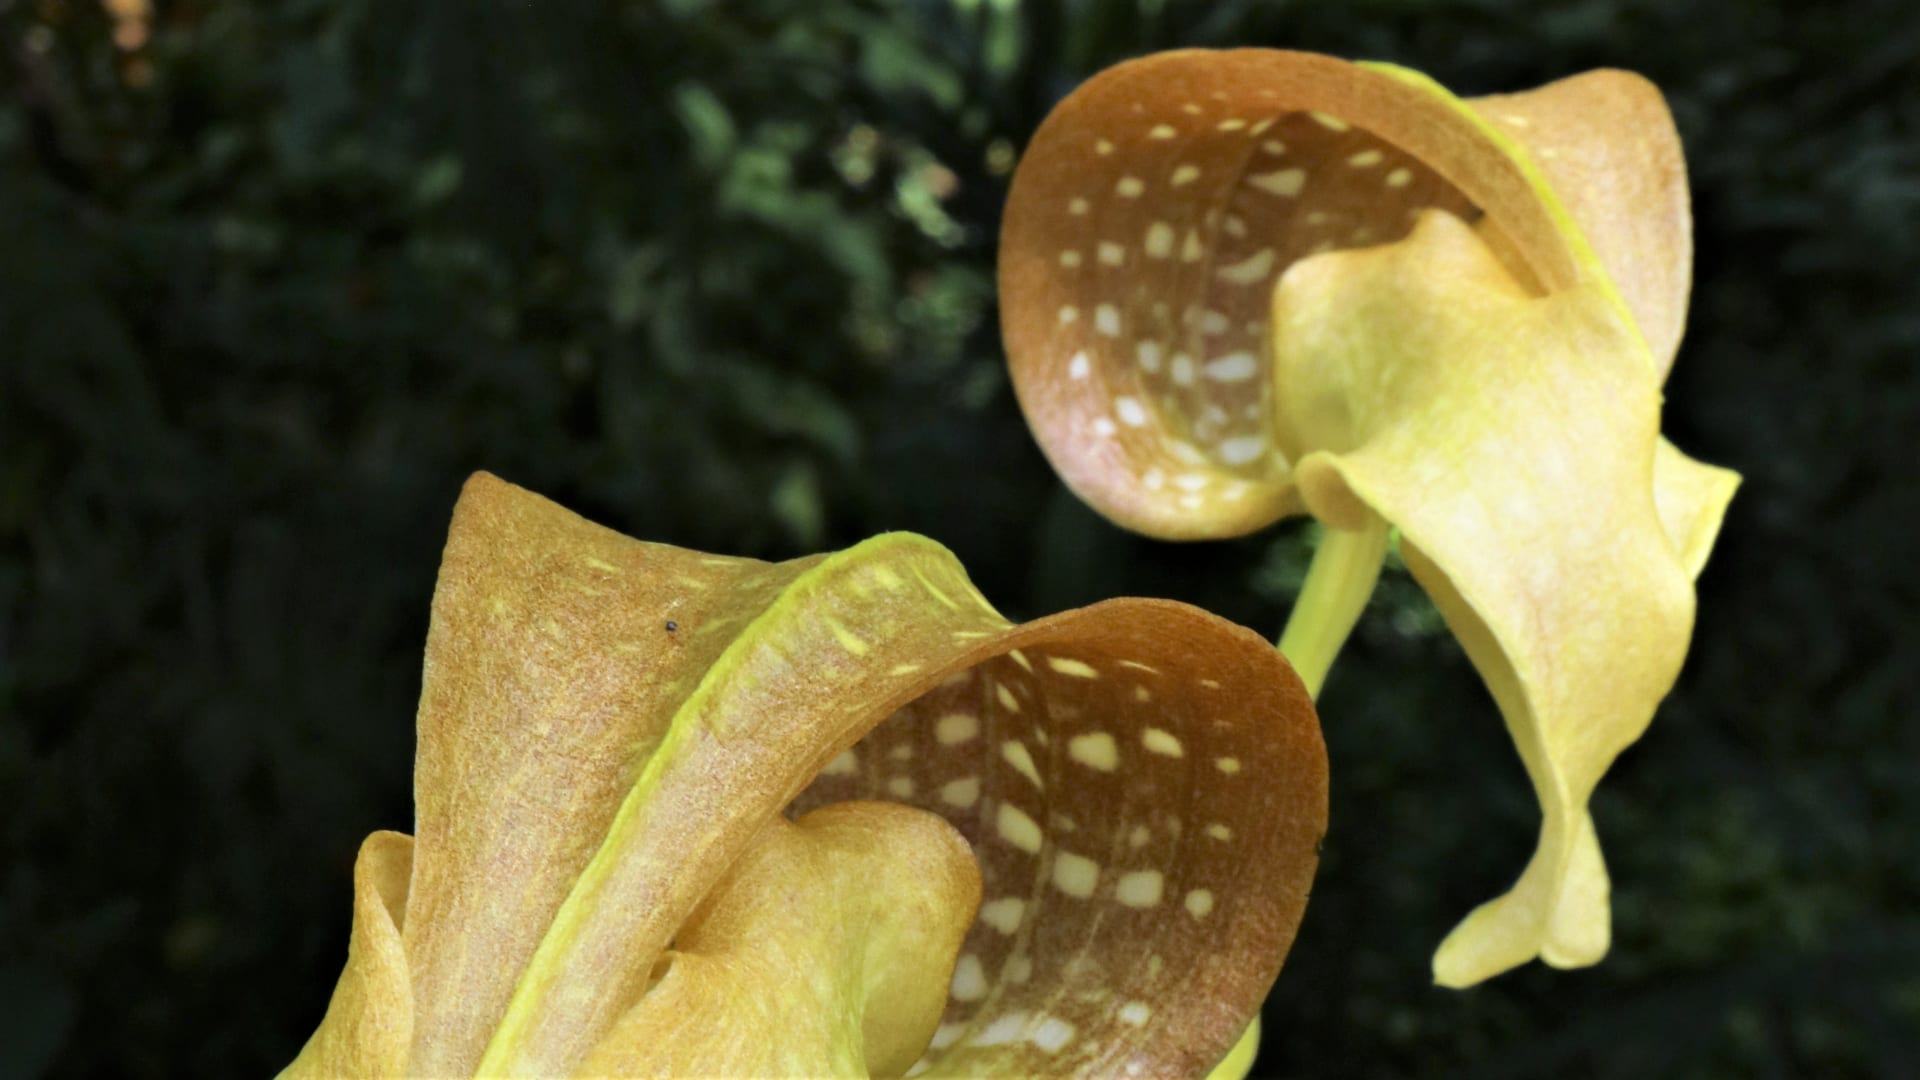 Orchidej Bulbophyllum grandiflorum z ostrova Nová Guinea, které má jedny z největších květů v rodu, ty jsou navíc velmi zvláštního, bizarního tvaru. Květ trochu připomíná hlavu kobry nebo vetřelce, který vás pozoruje – působí znepokojivě, jako by do našeho světa příliš nepatřil.